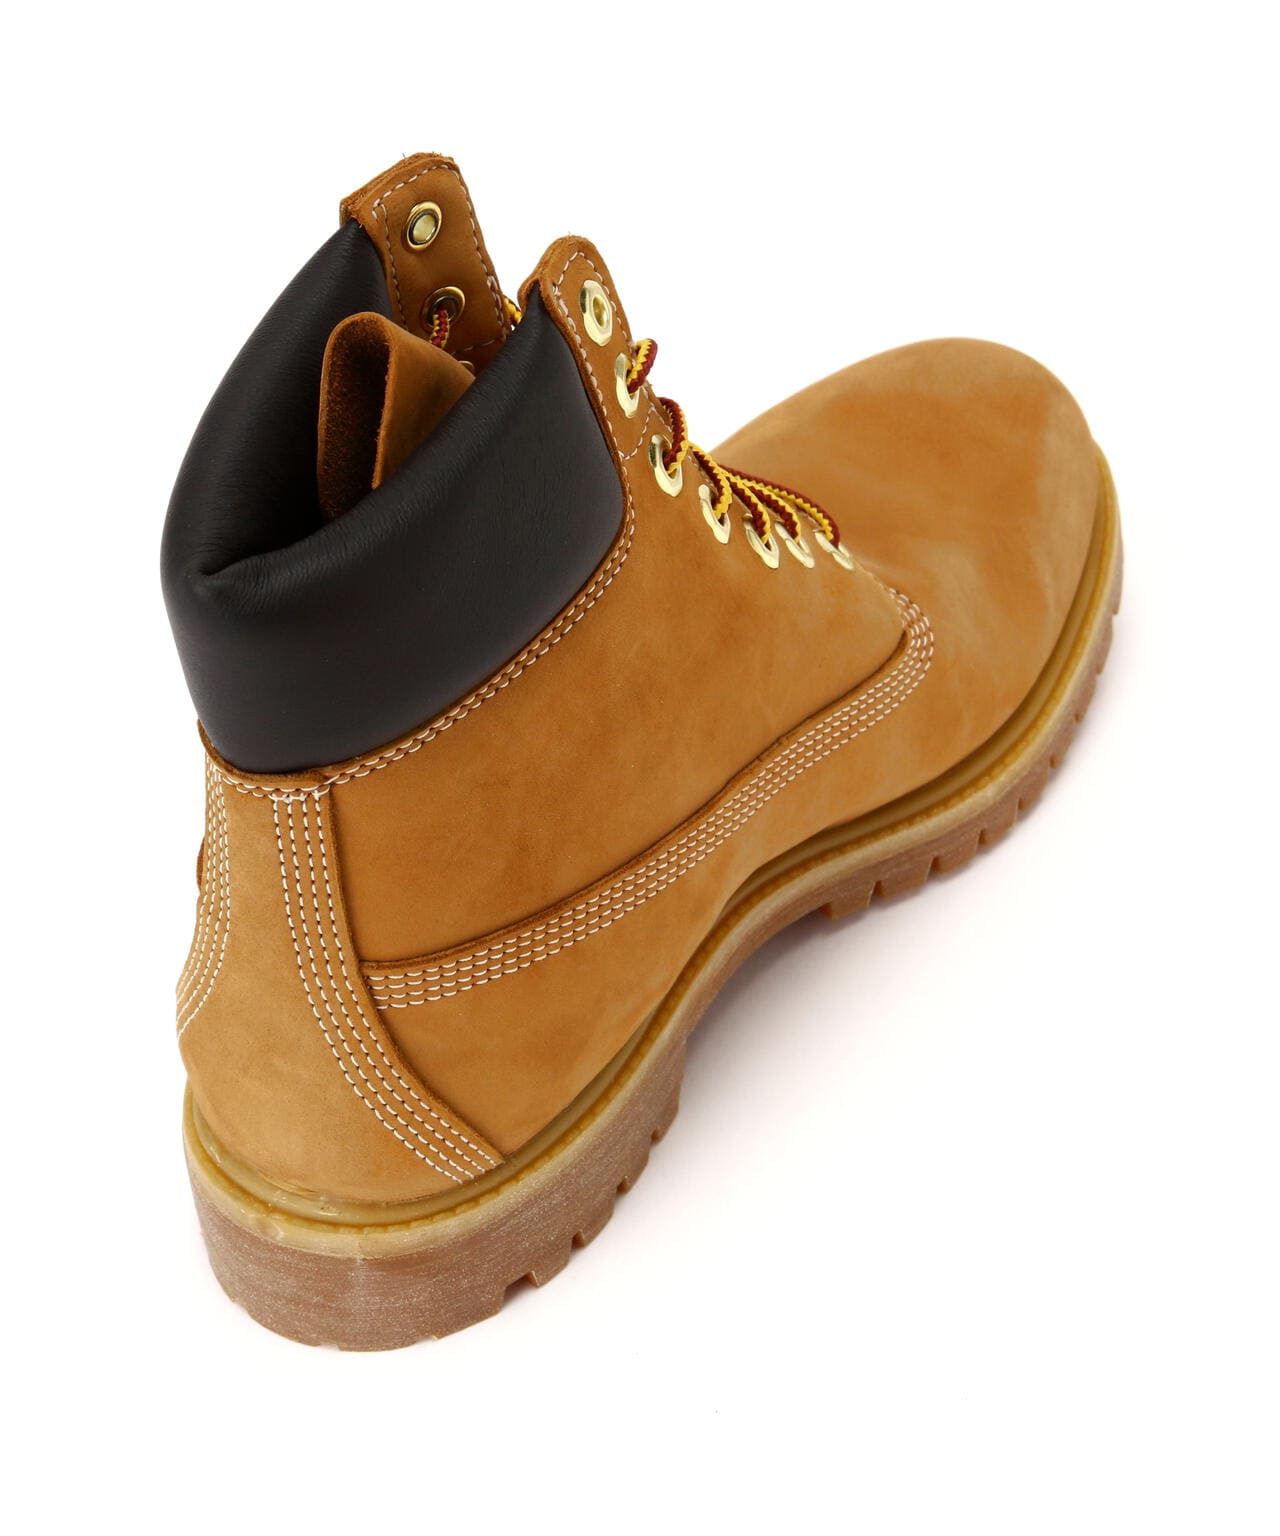 Timberland/ティンバーランド/6inch Premium Boots/6インチ プレミアムブーツ